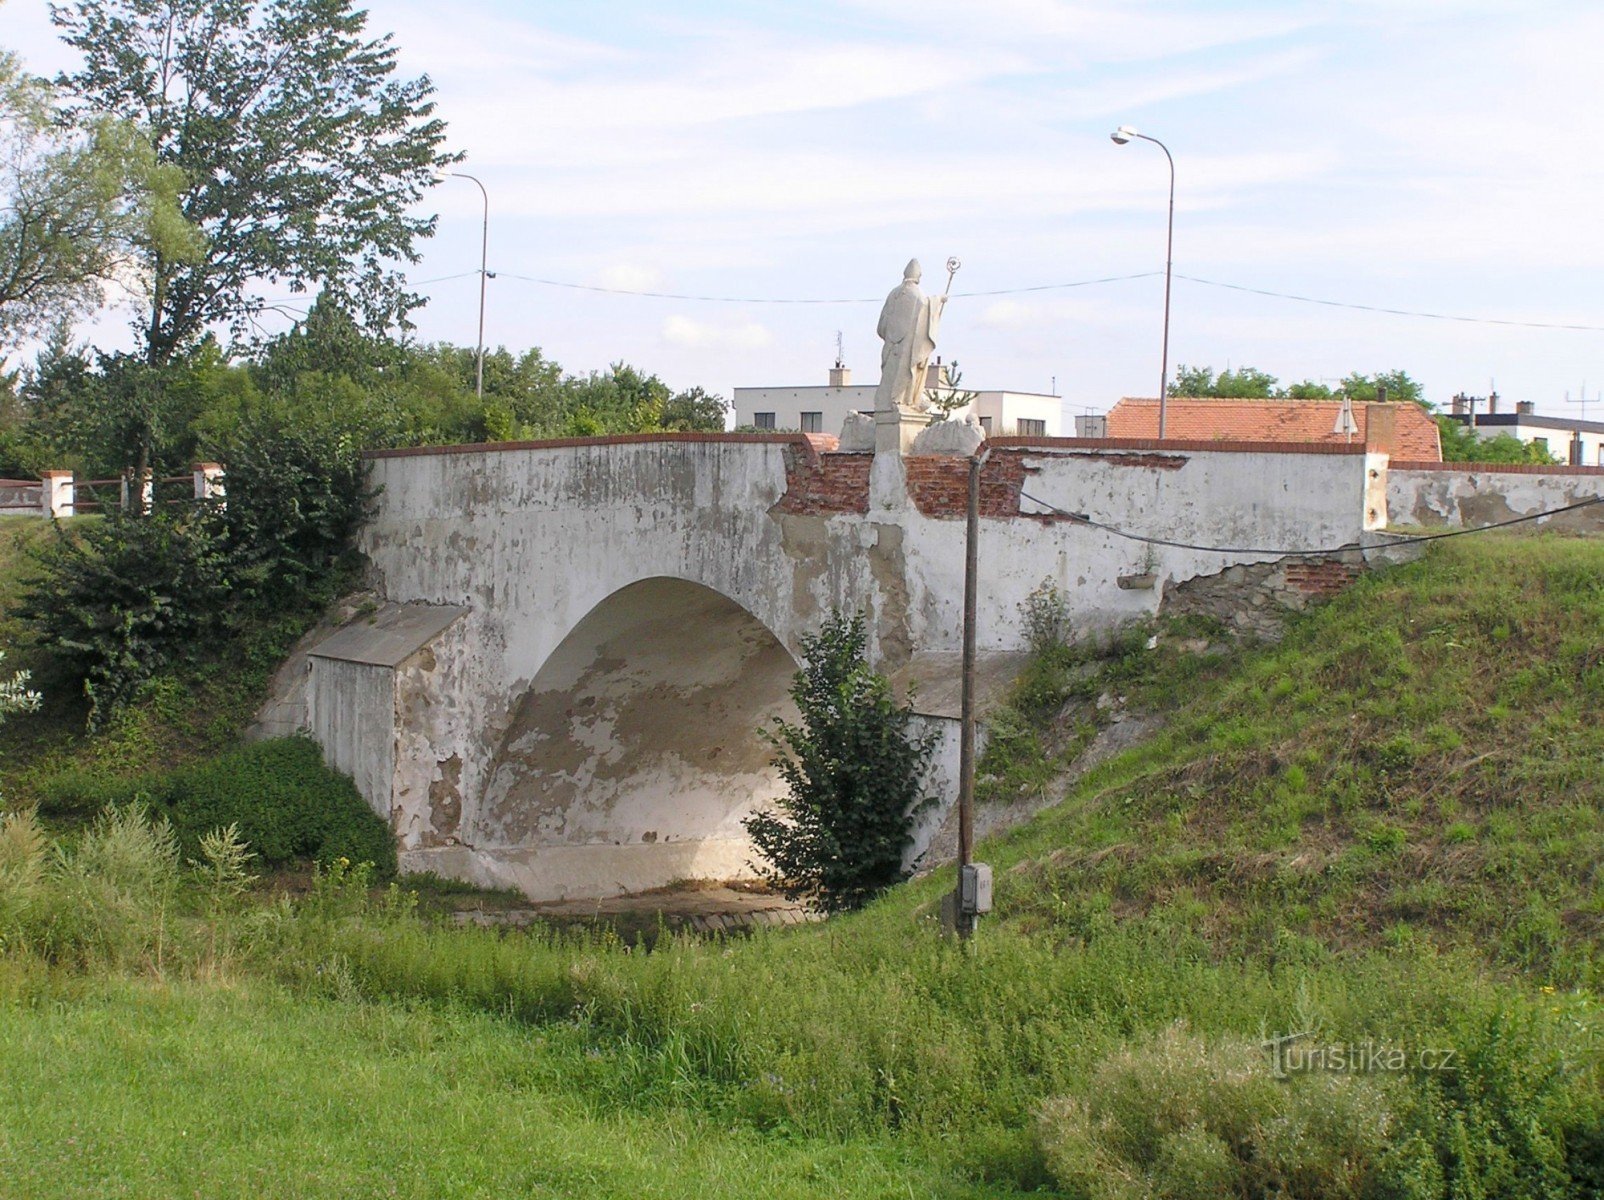 pont routier baroque - bord nord-ouest du village, près de la route Znojmo-Moravské Budějovice